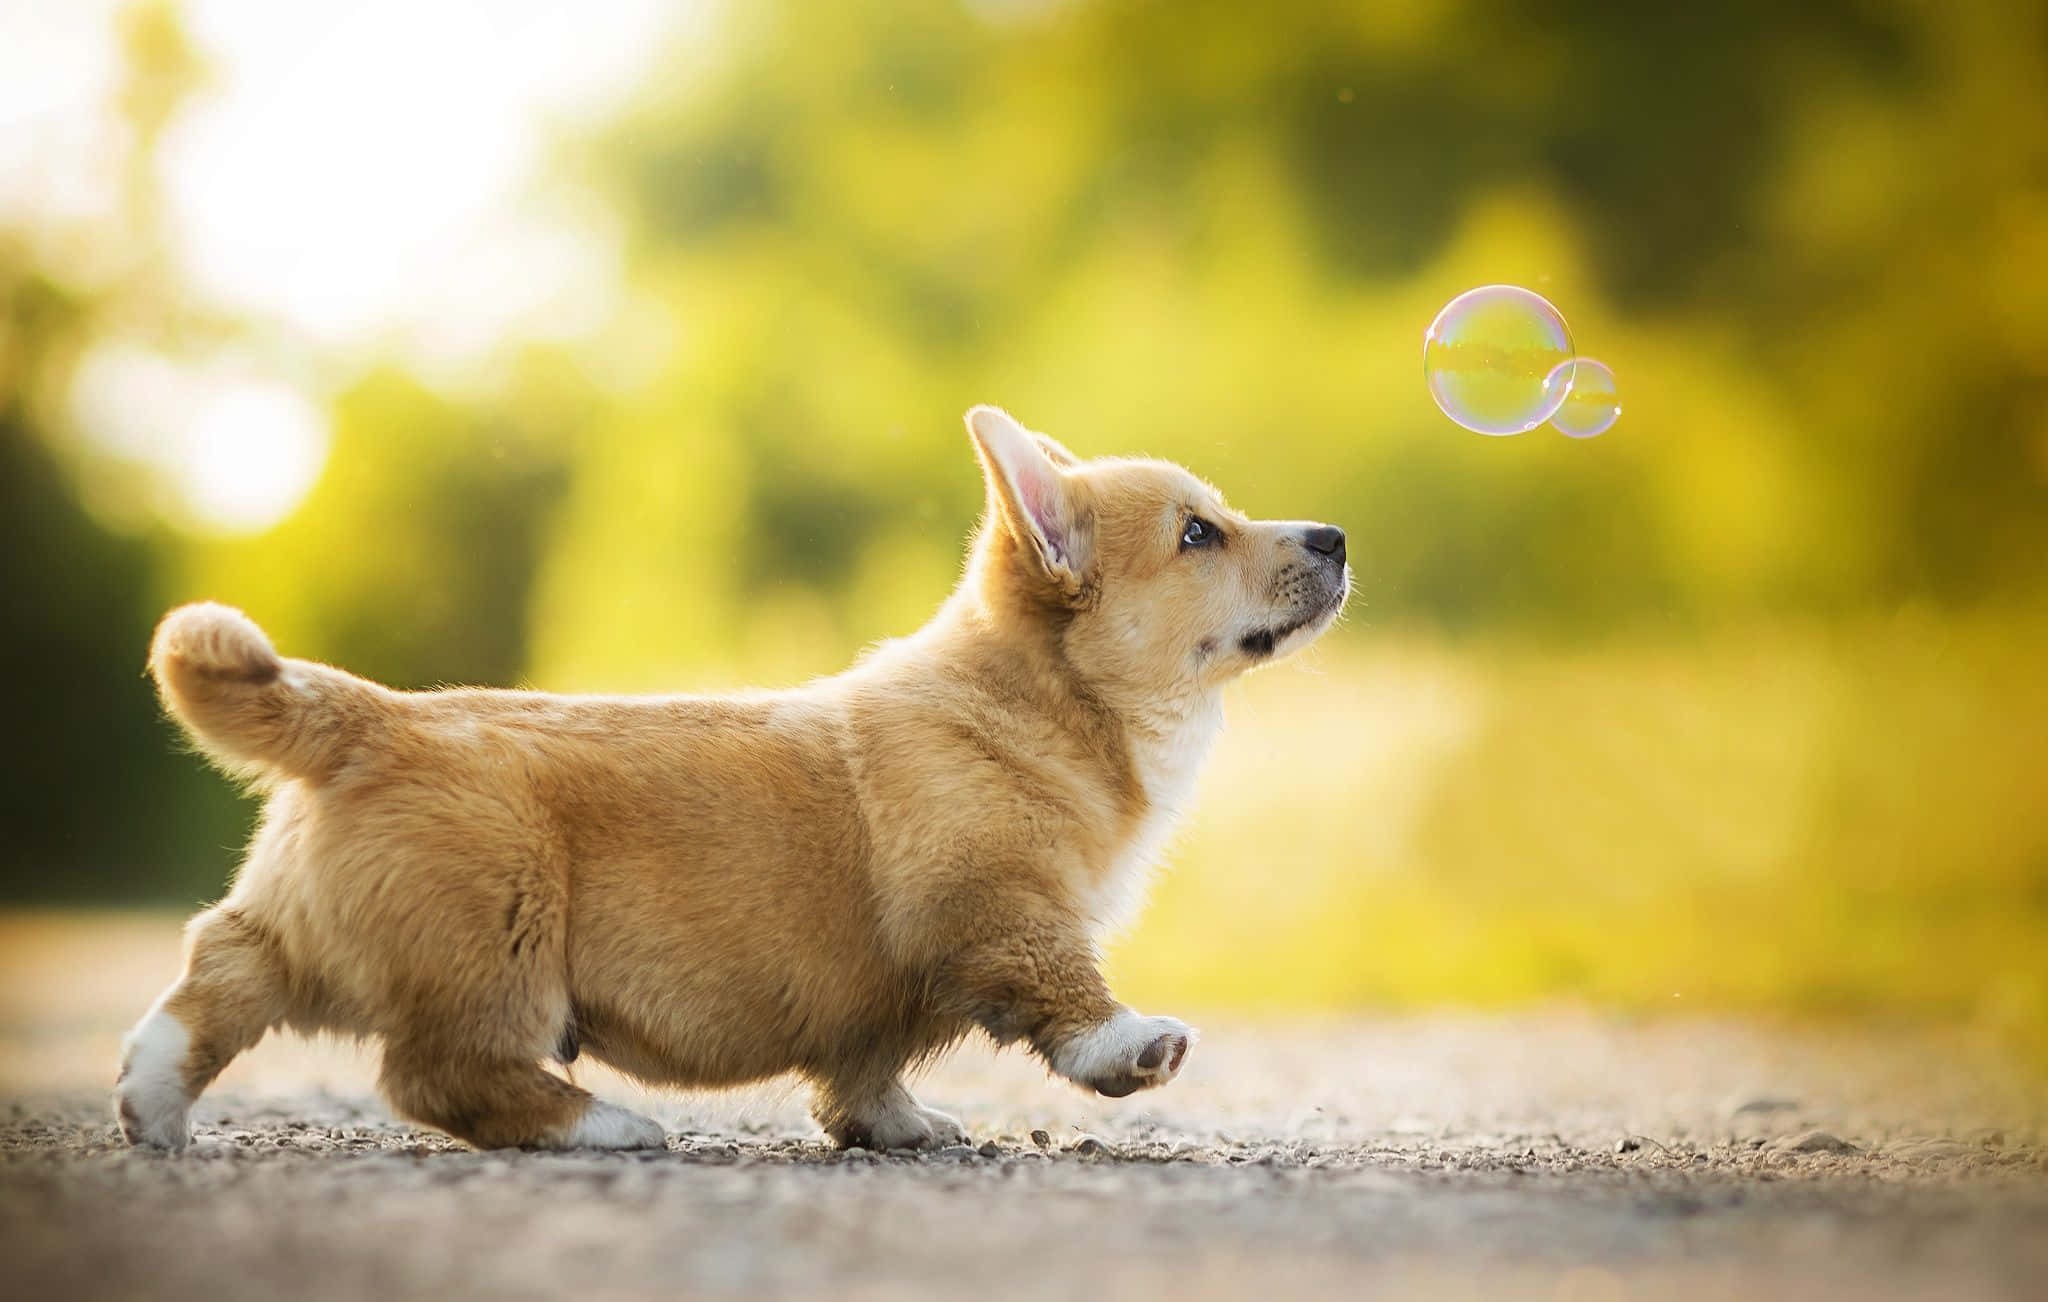 Unpequeño Perro Está Soplando Burbujas En El Aire.